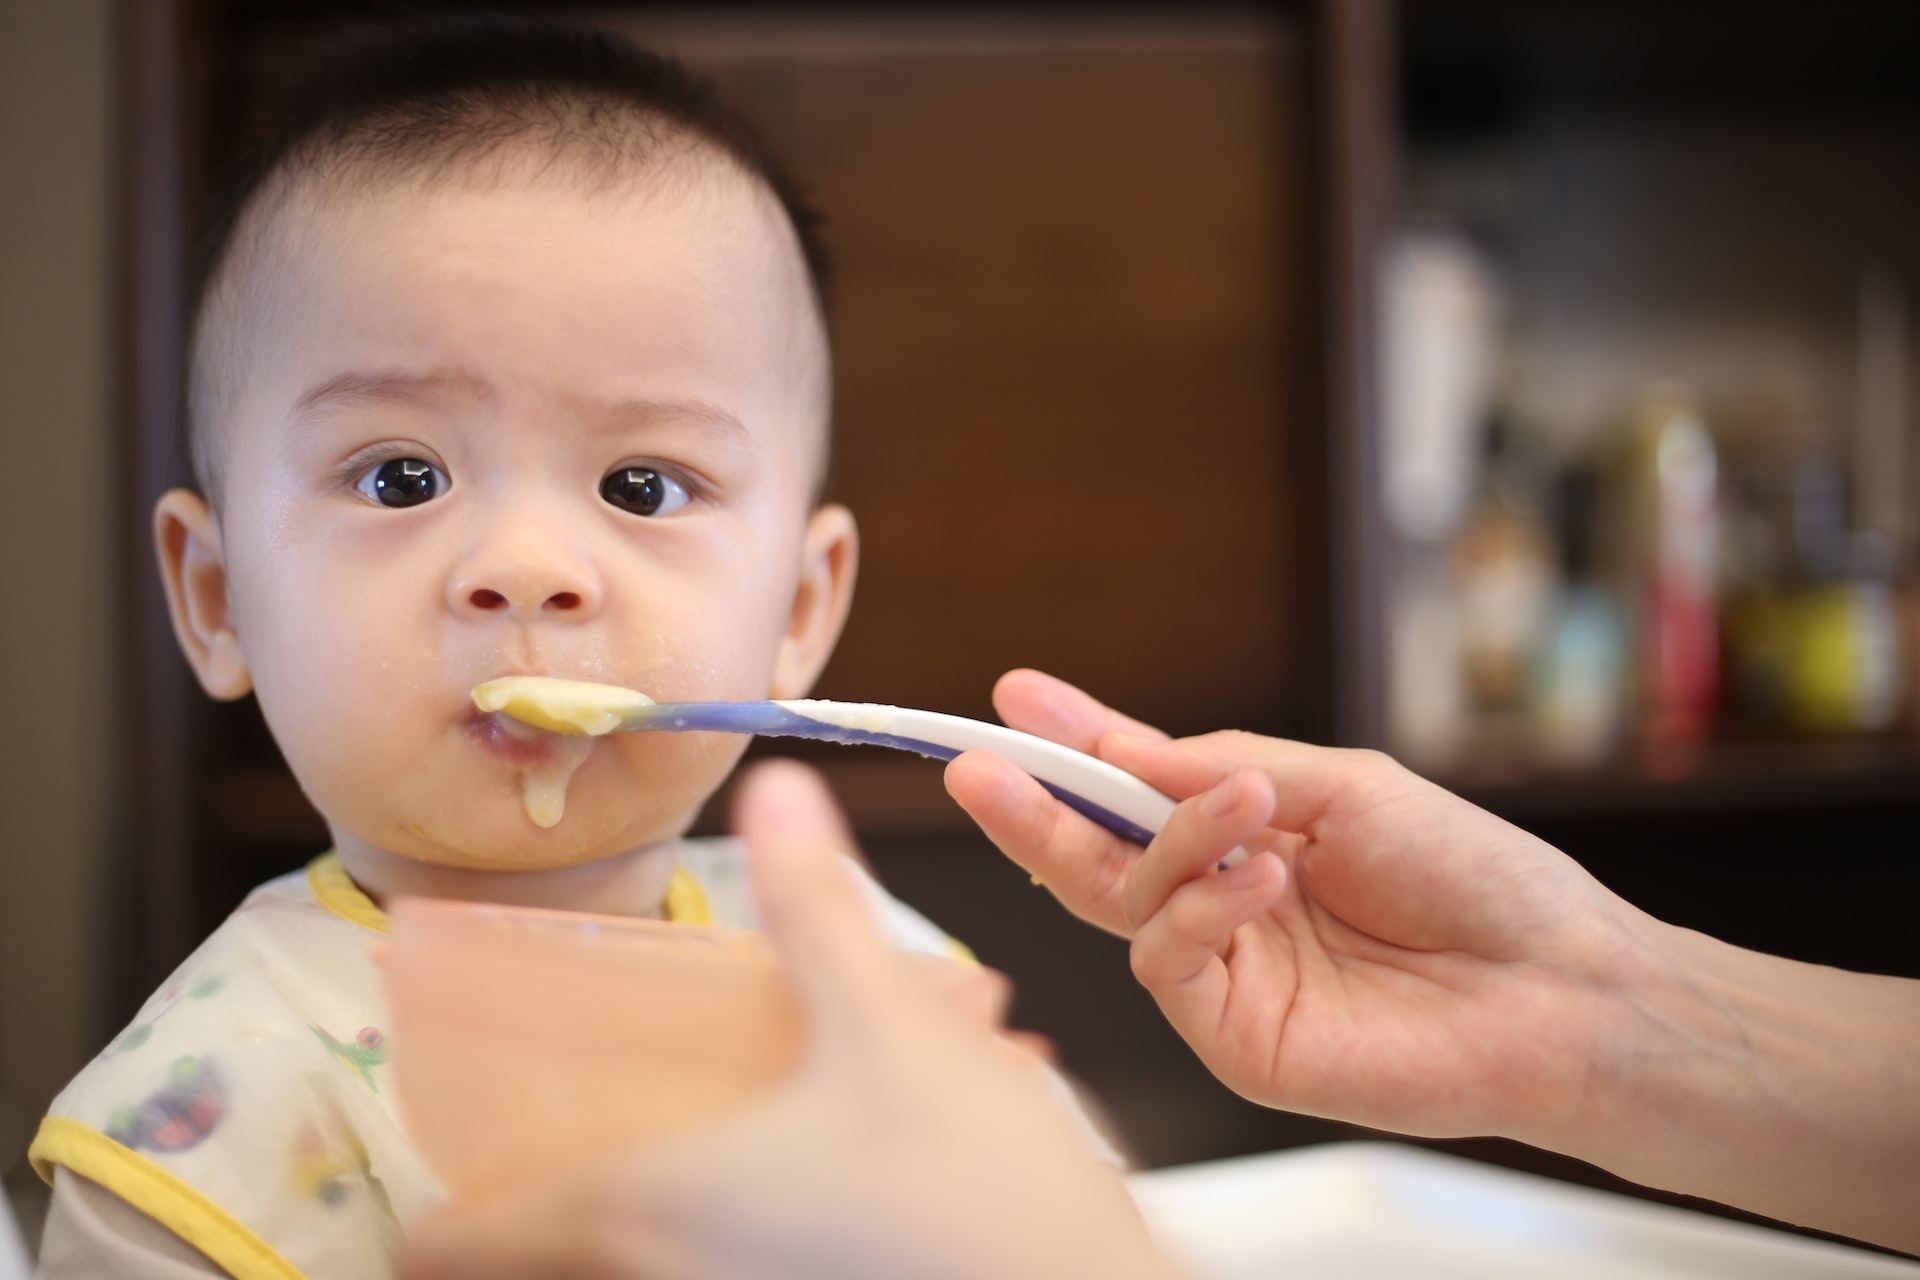 Heavy Metals in Baby Food Lawsuit